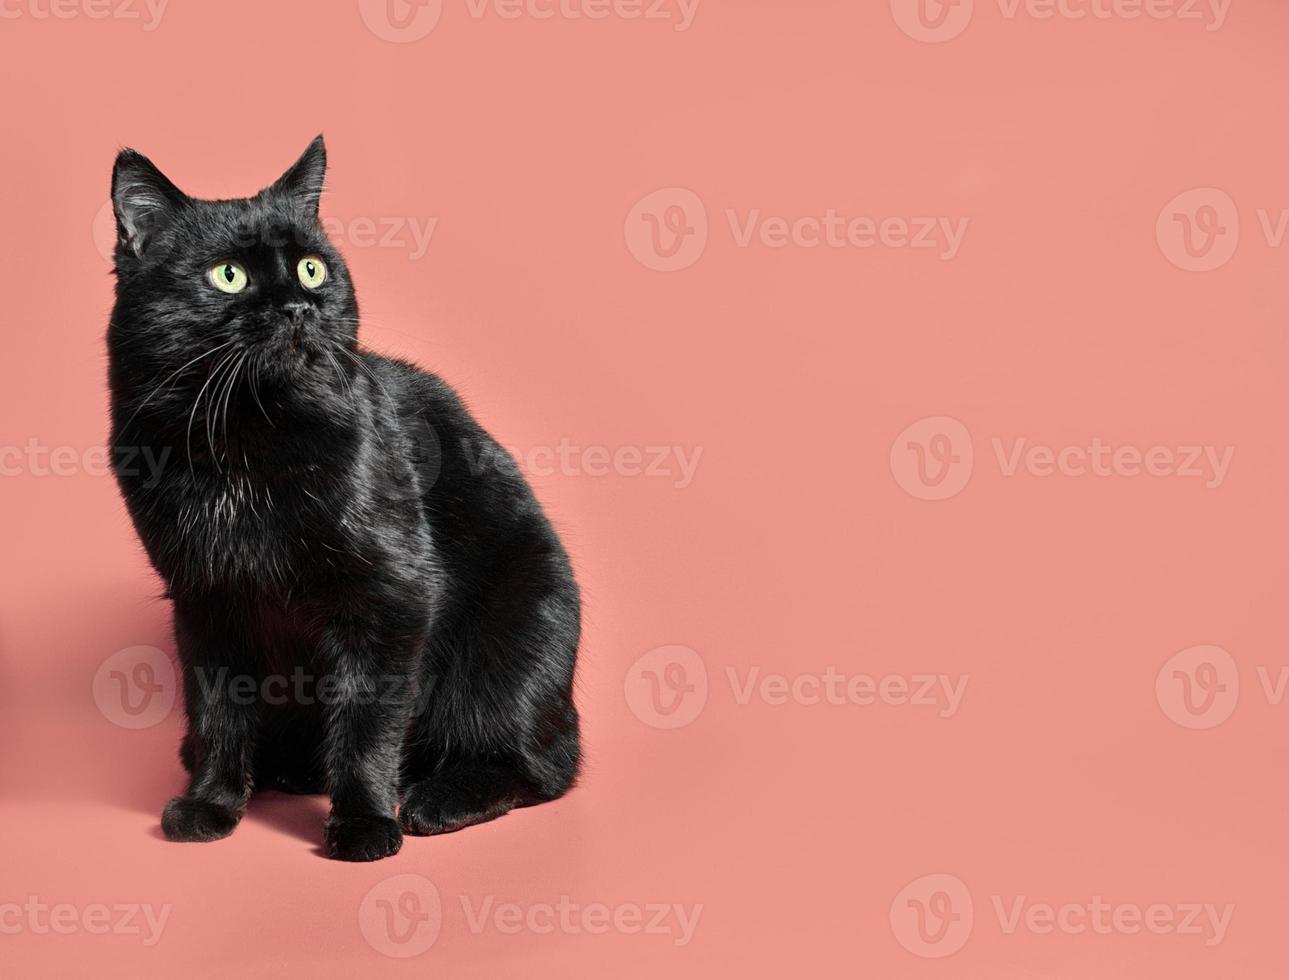 zwarte kat op een oranje achtergrond foto